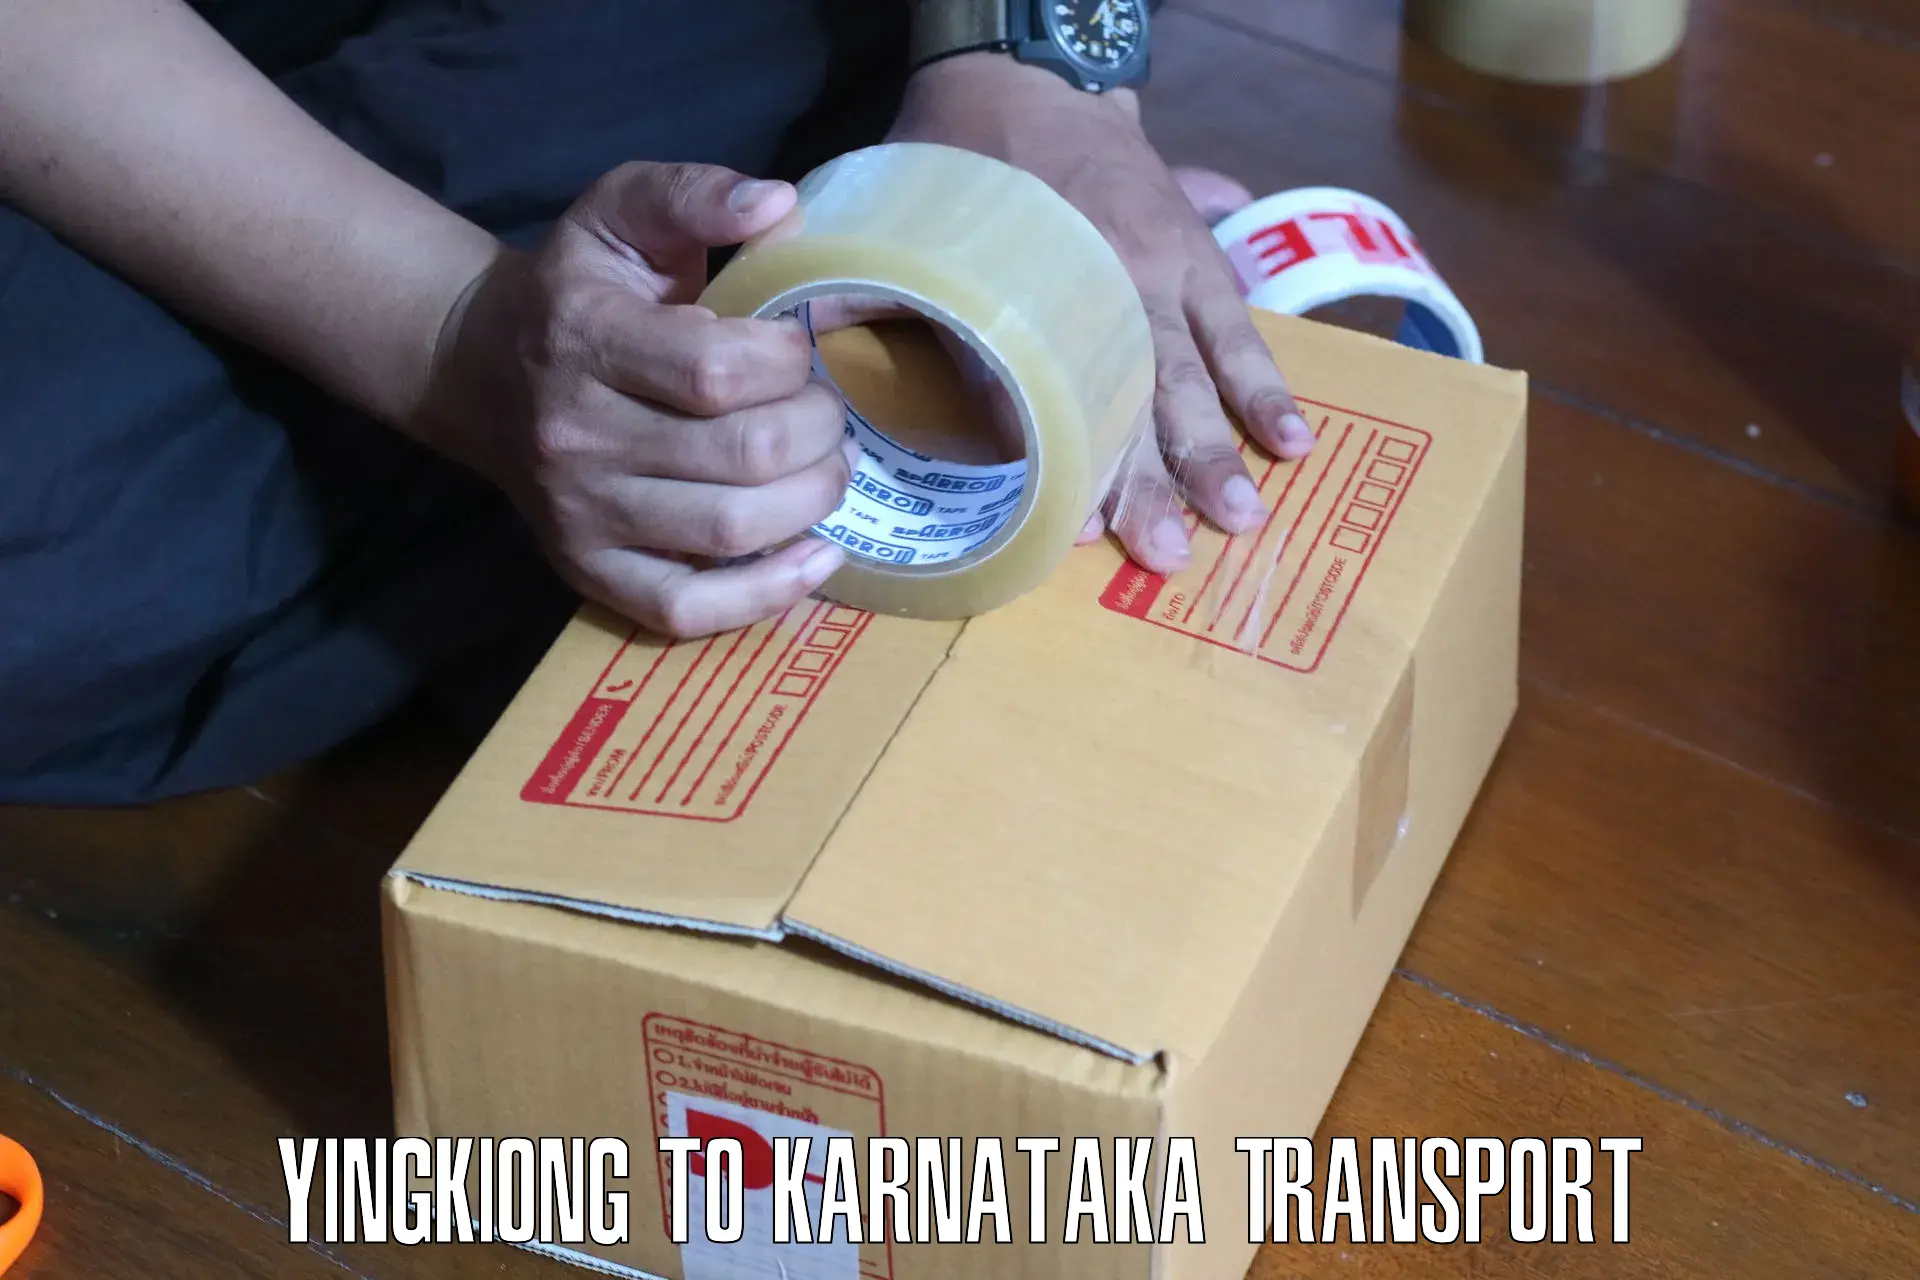 Online transport booking Yingkiong to Karnataka